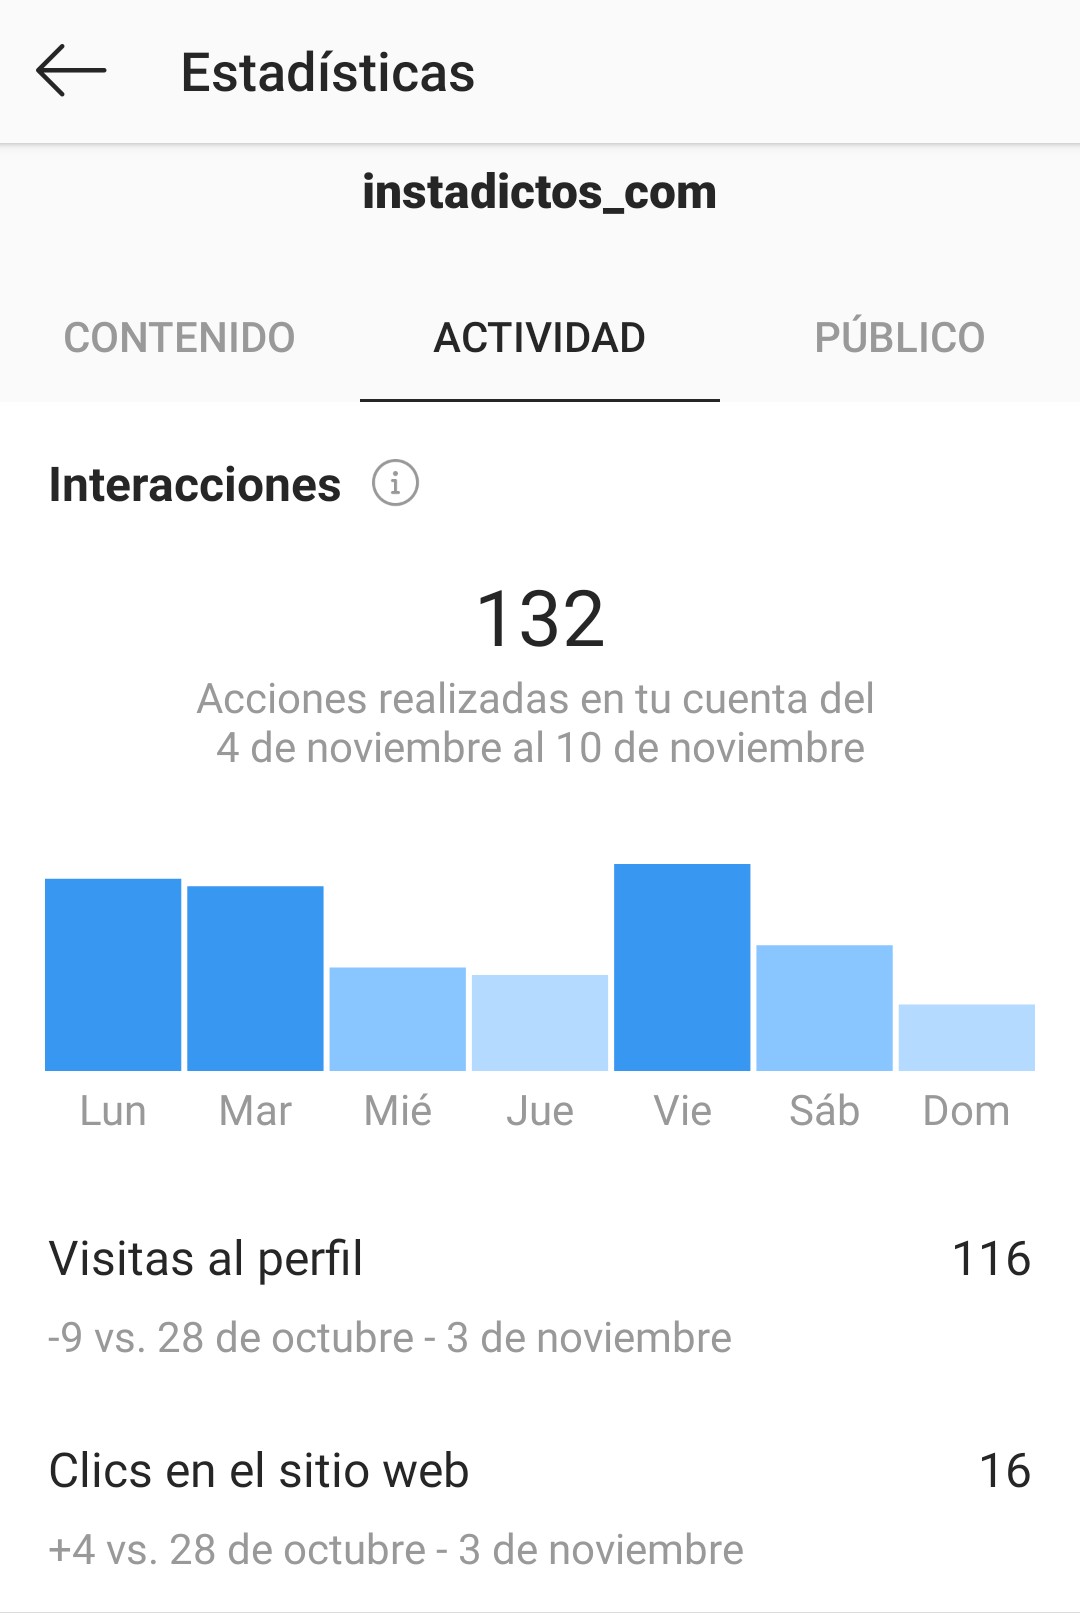 Estadísticas en Instagram 2019